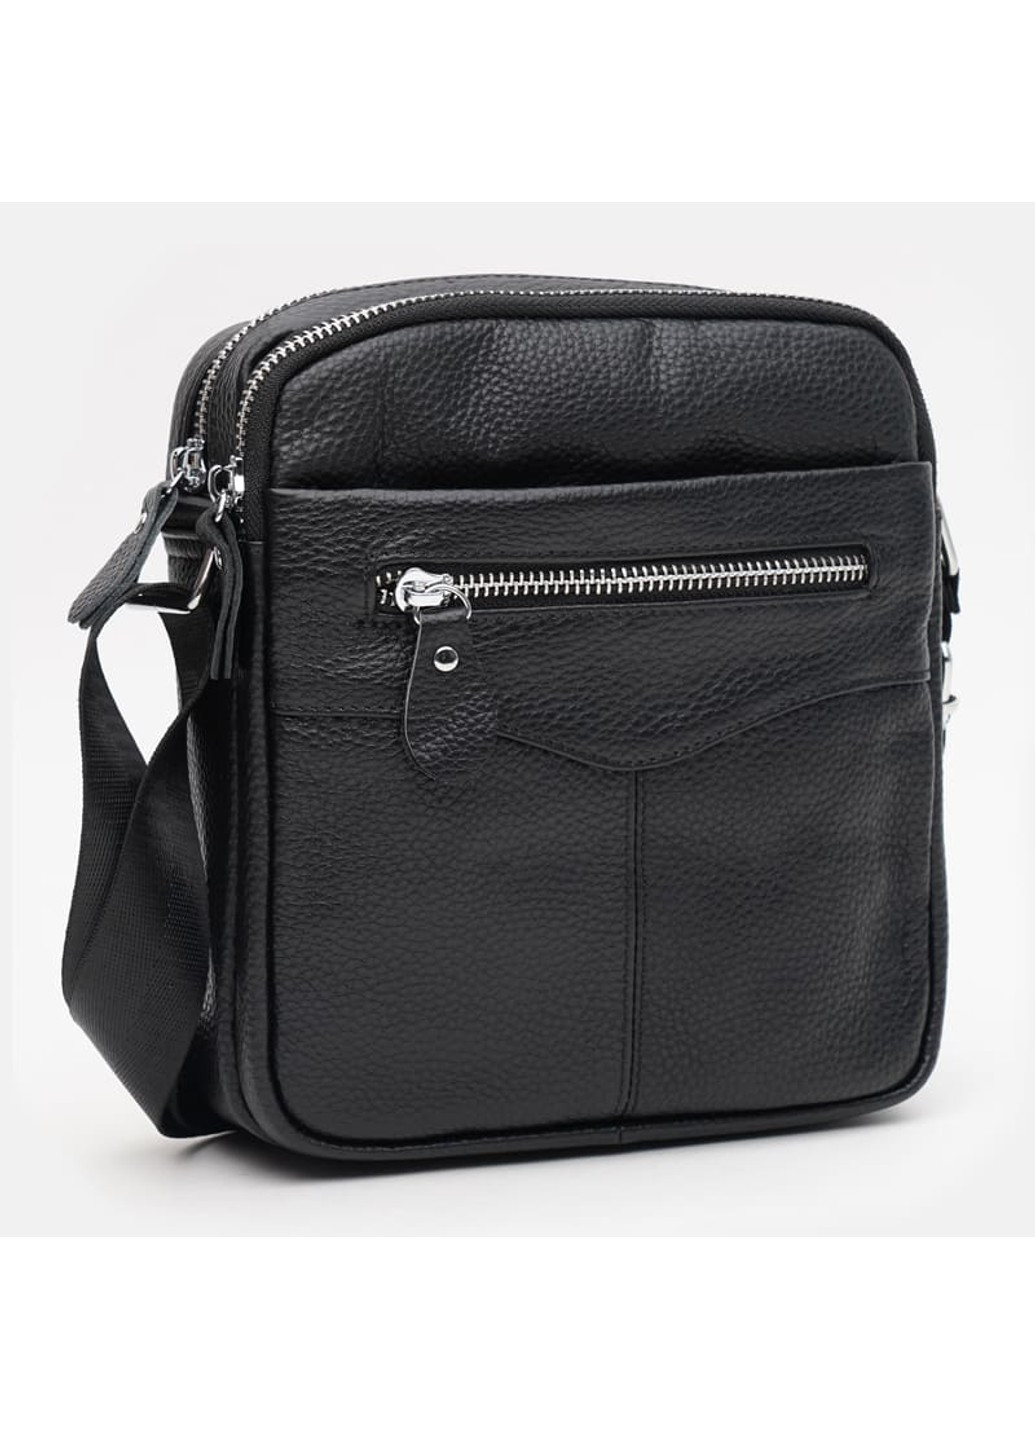 Мужская кожаная сумка K11183bl-black Keizer (266144062)